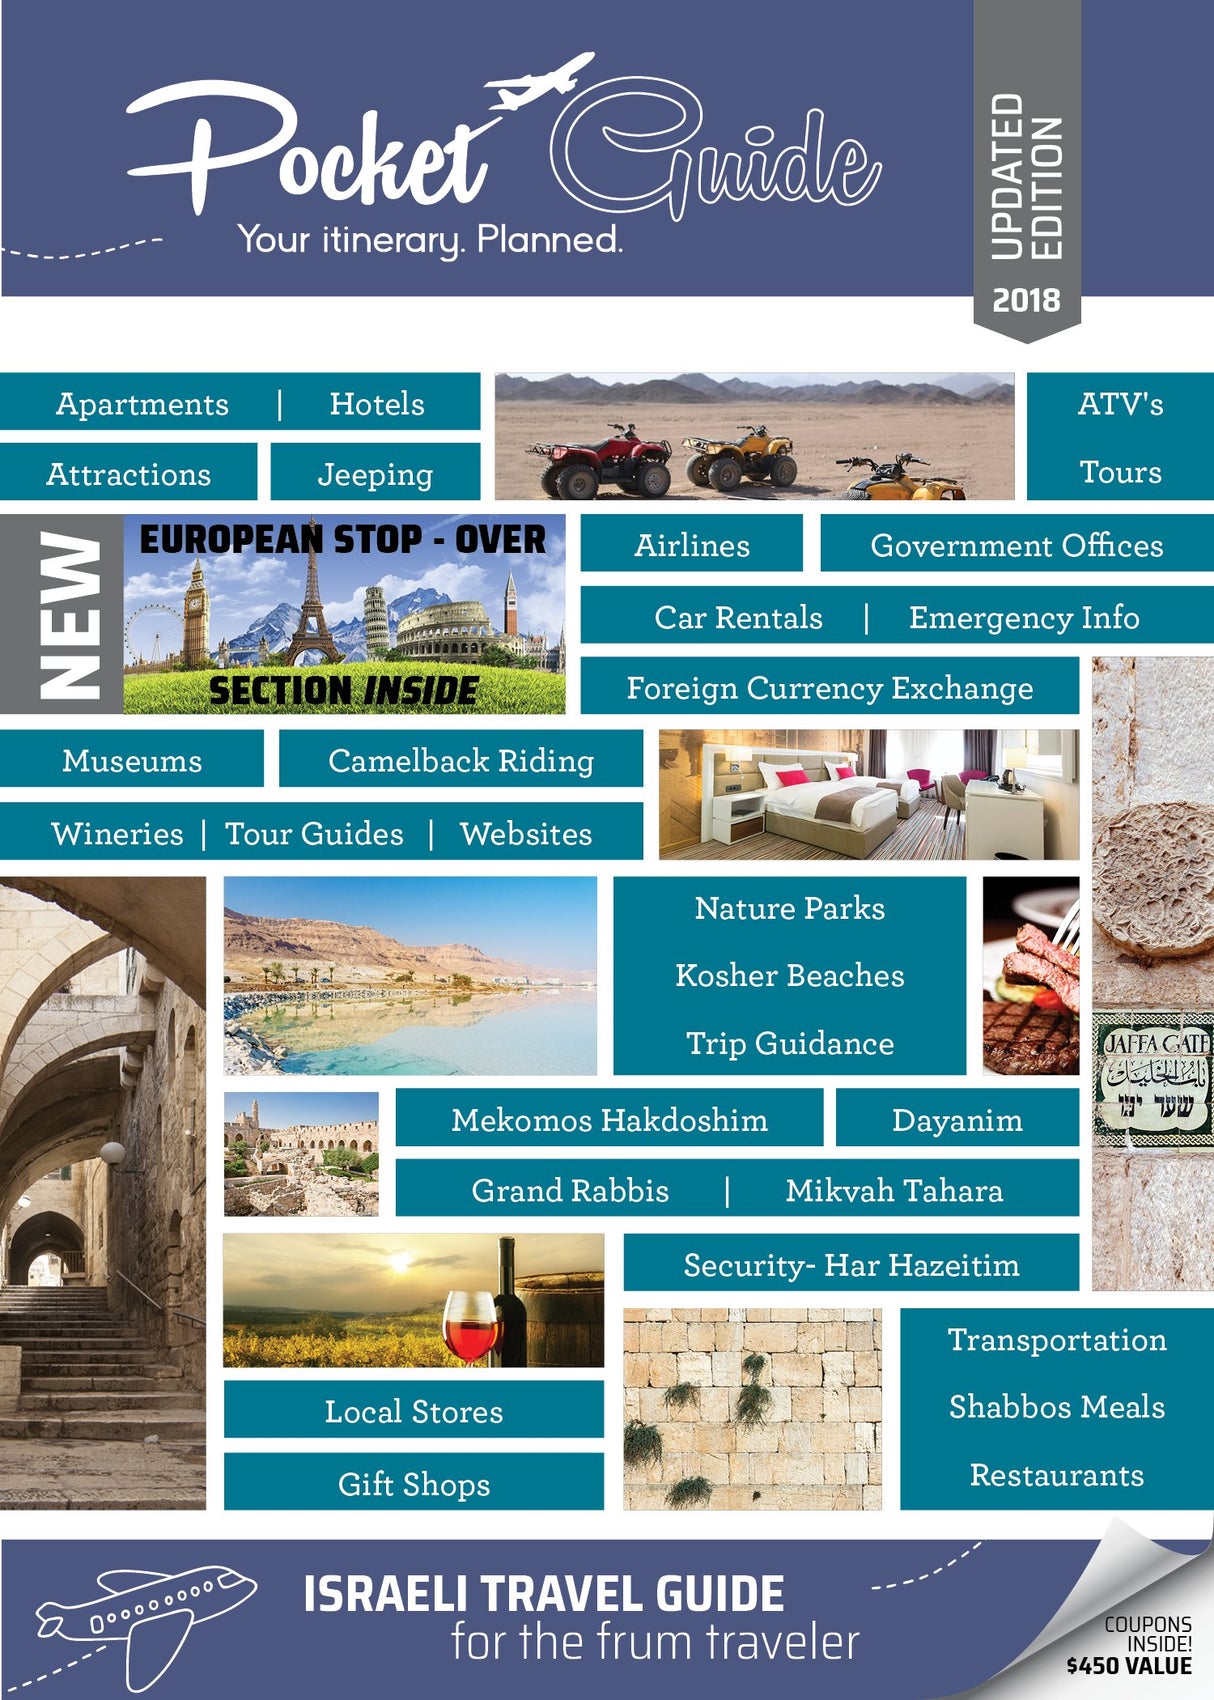 Pocket Guide, Israeli Travel Guide, for the frum traveler, paperback 2018